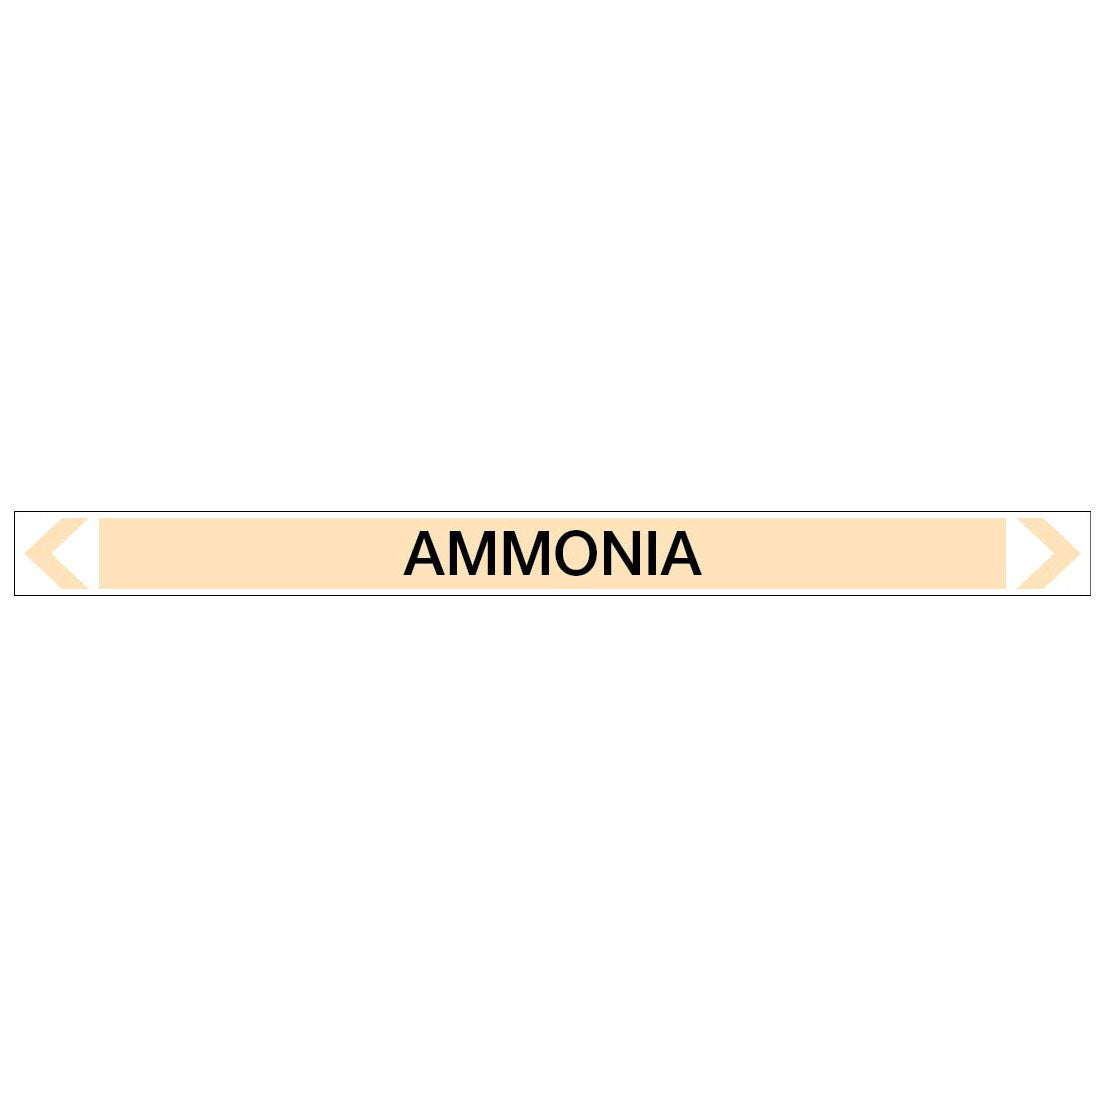 Gases - Ammonia - Pipe Marker Sticker